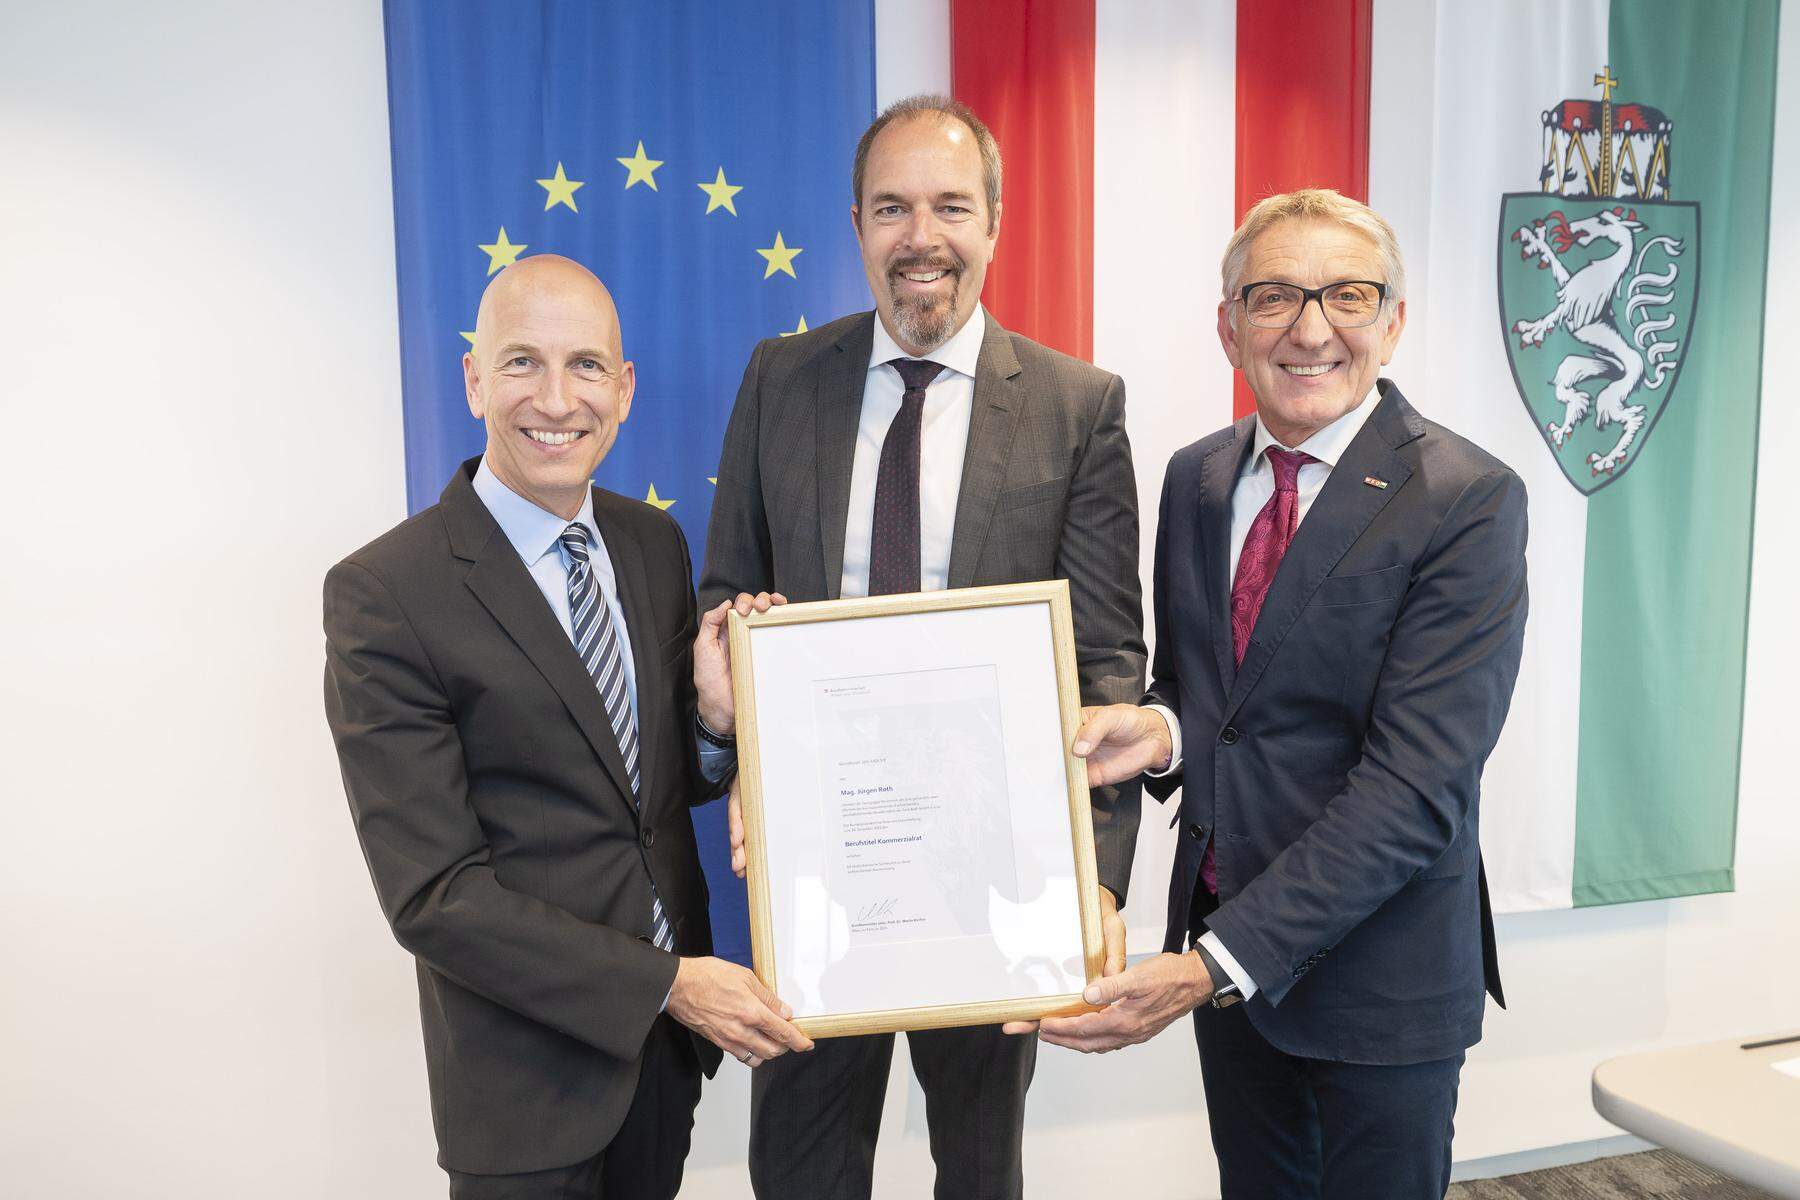 In Graz verliehen: Berufstitel Kommerzialrat: Ehrung für Unternehmer Jürgen Roth 